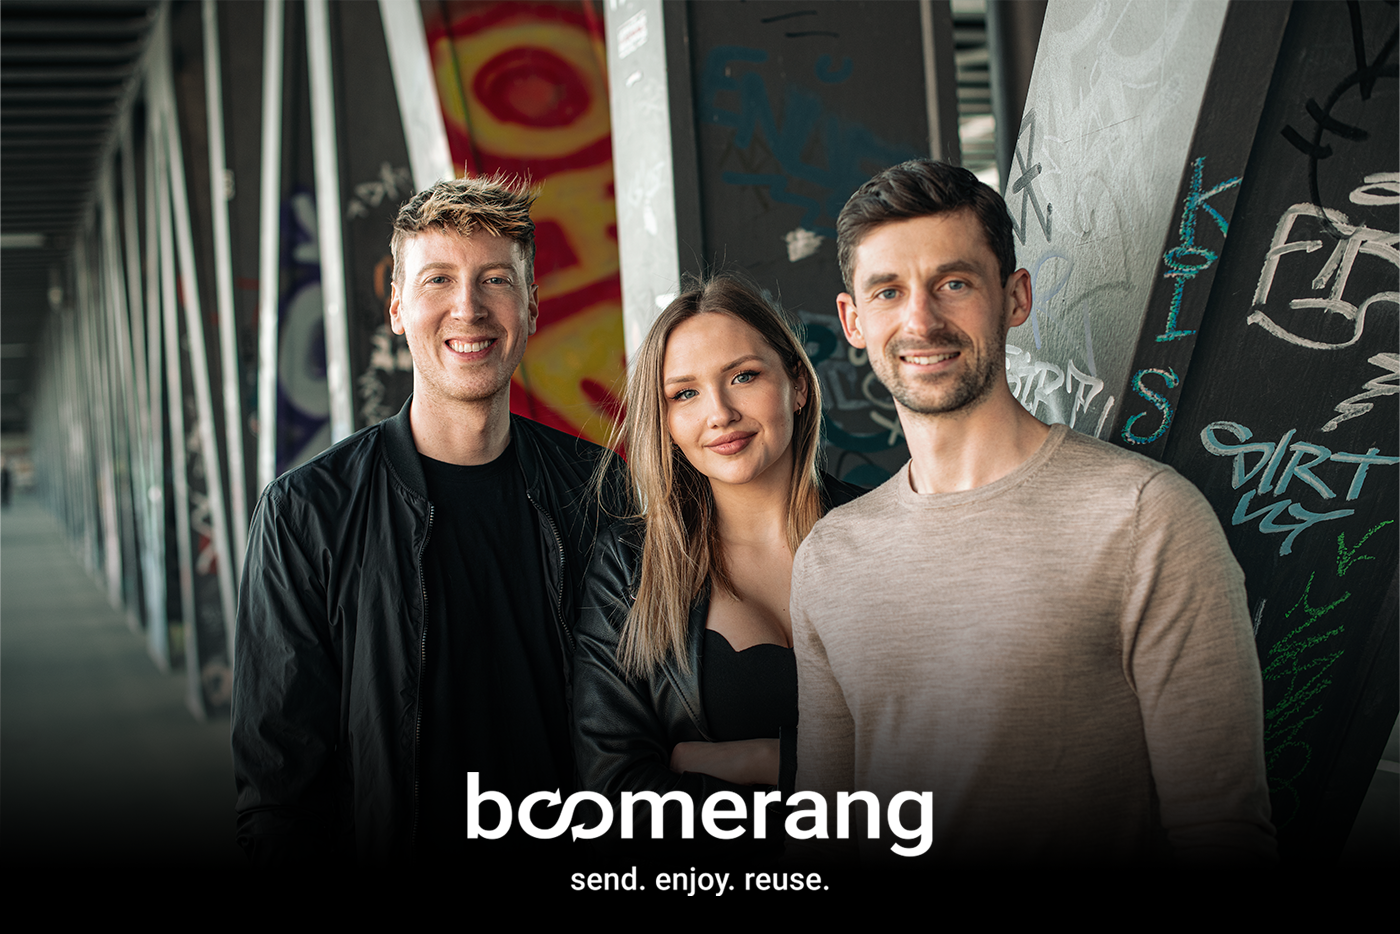 Boomerang / startup from Hamburg / Background